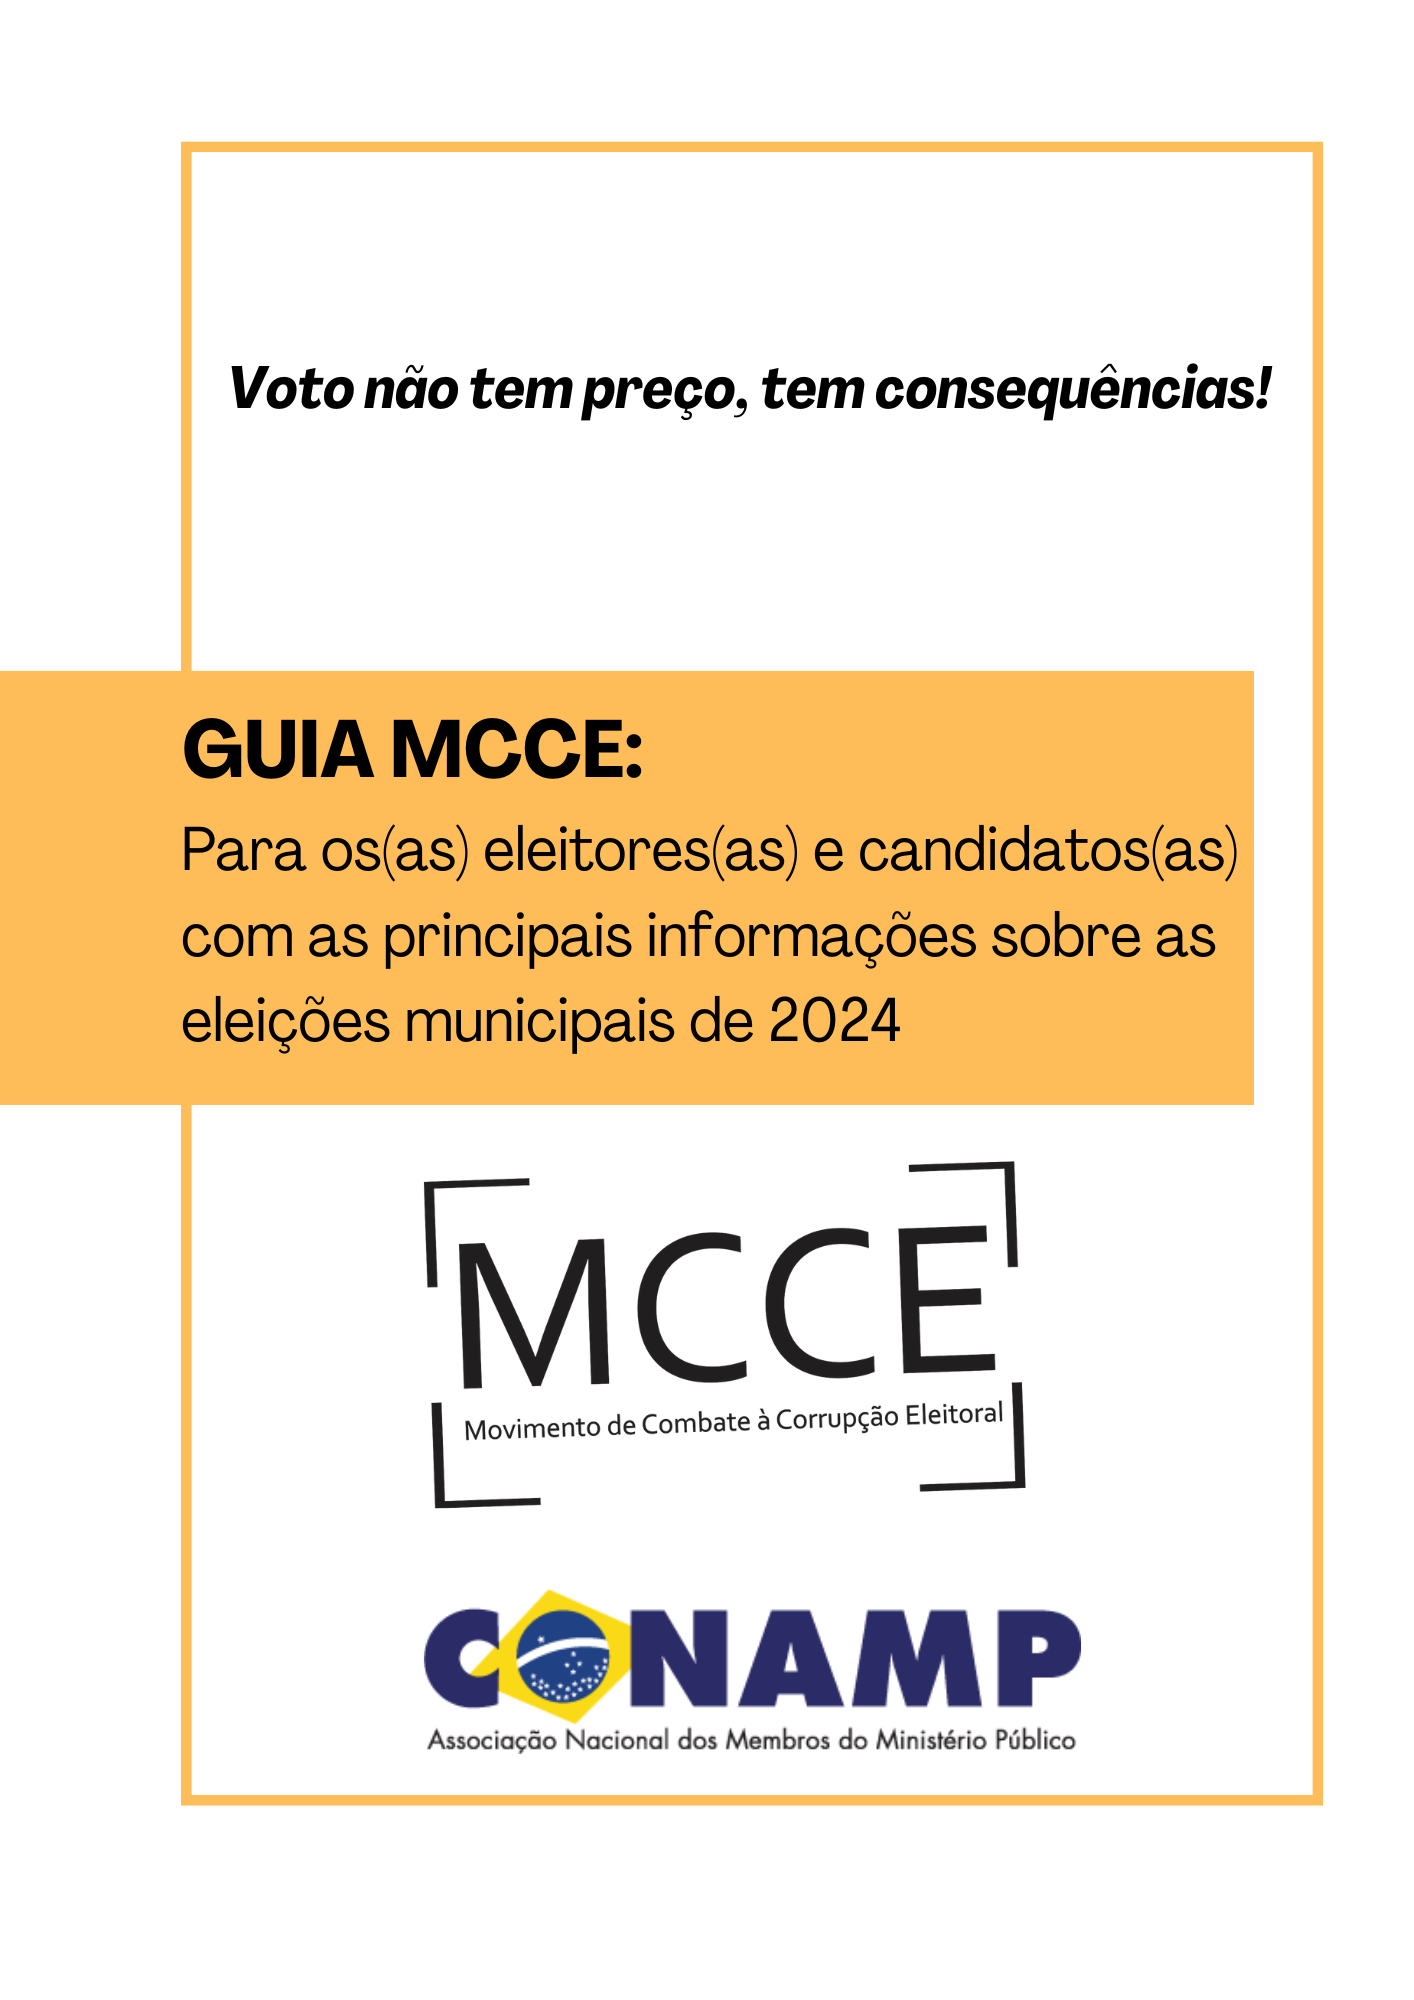 GUIA MCCE_para eleitores(as) e candidatos(as) com as principais informações sobre as eleições municipais 2024